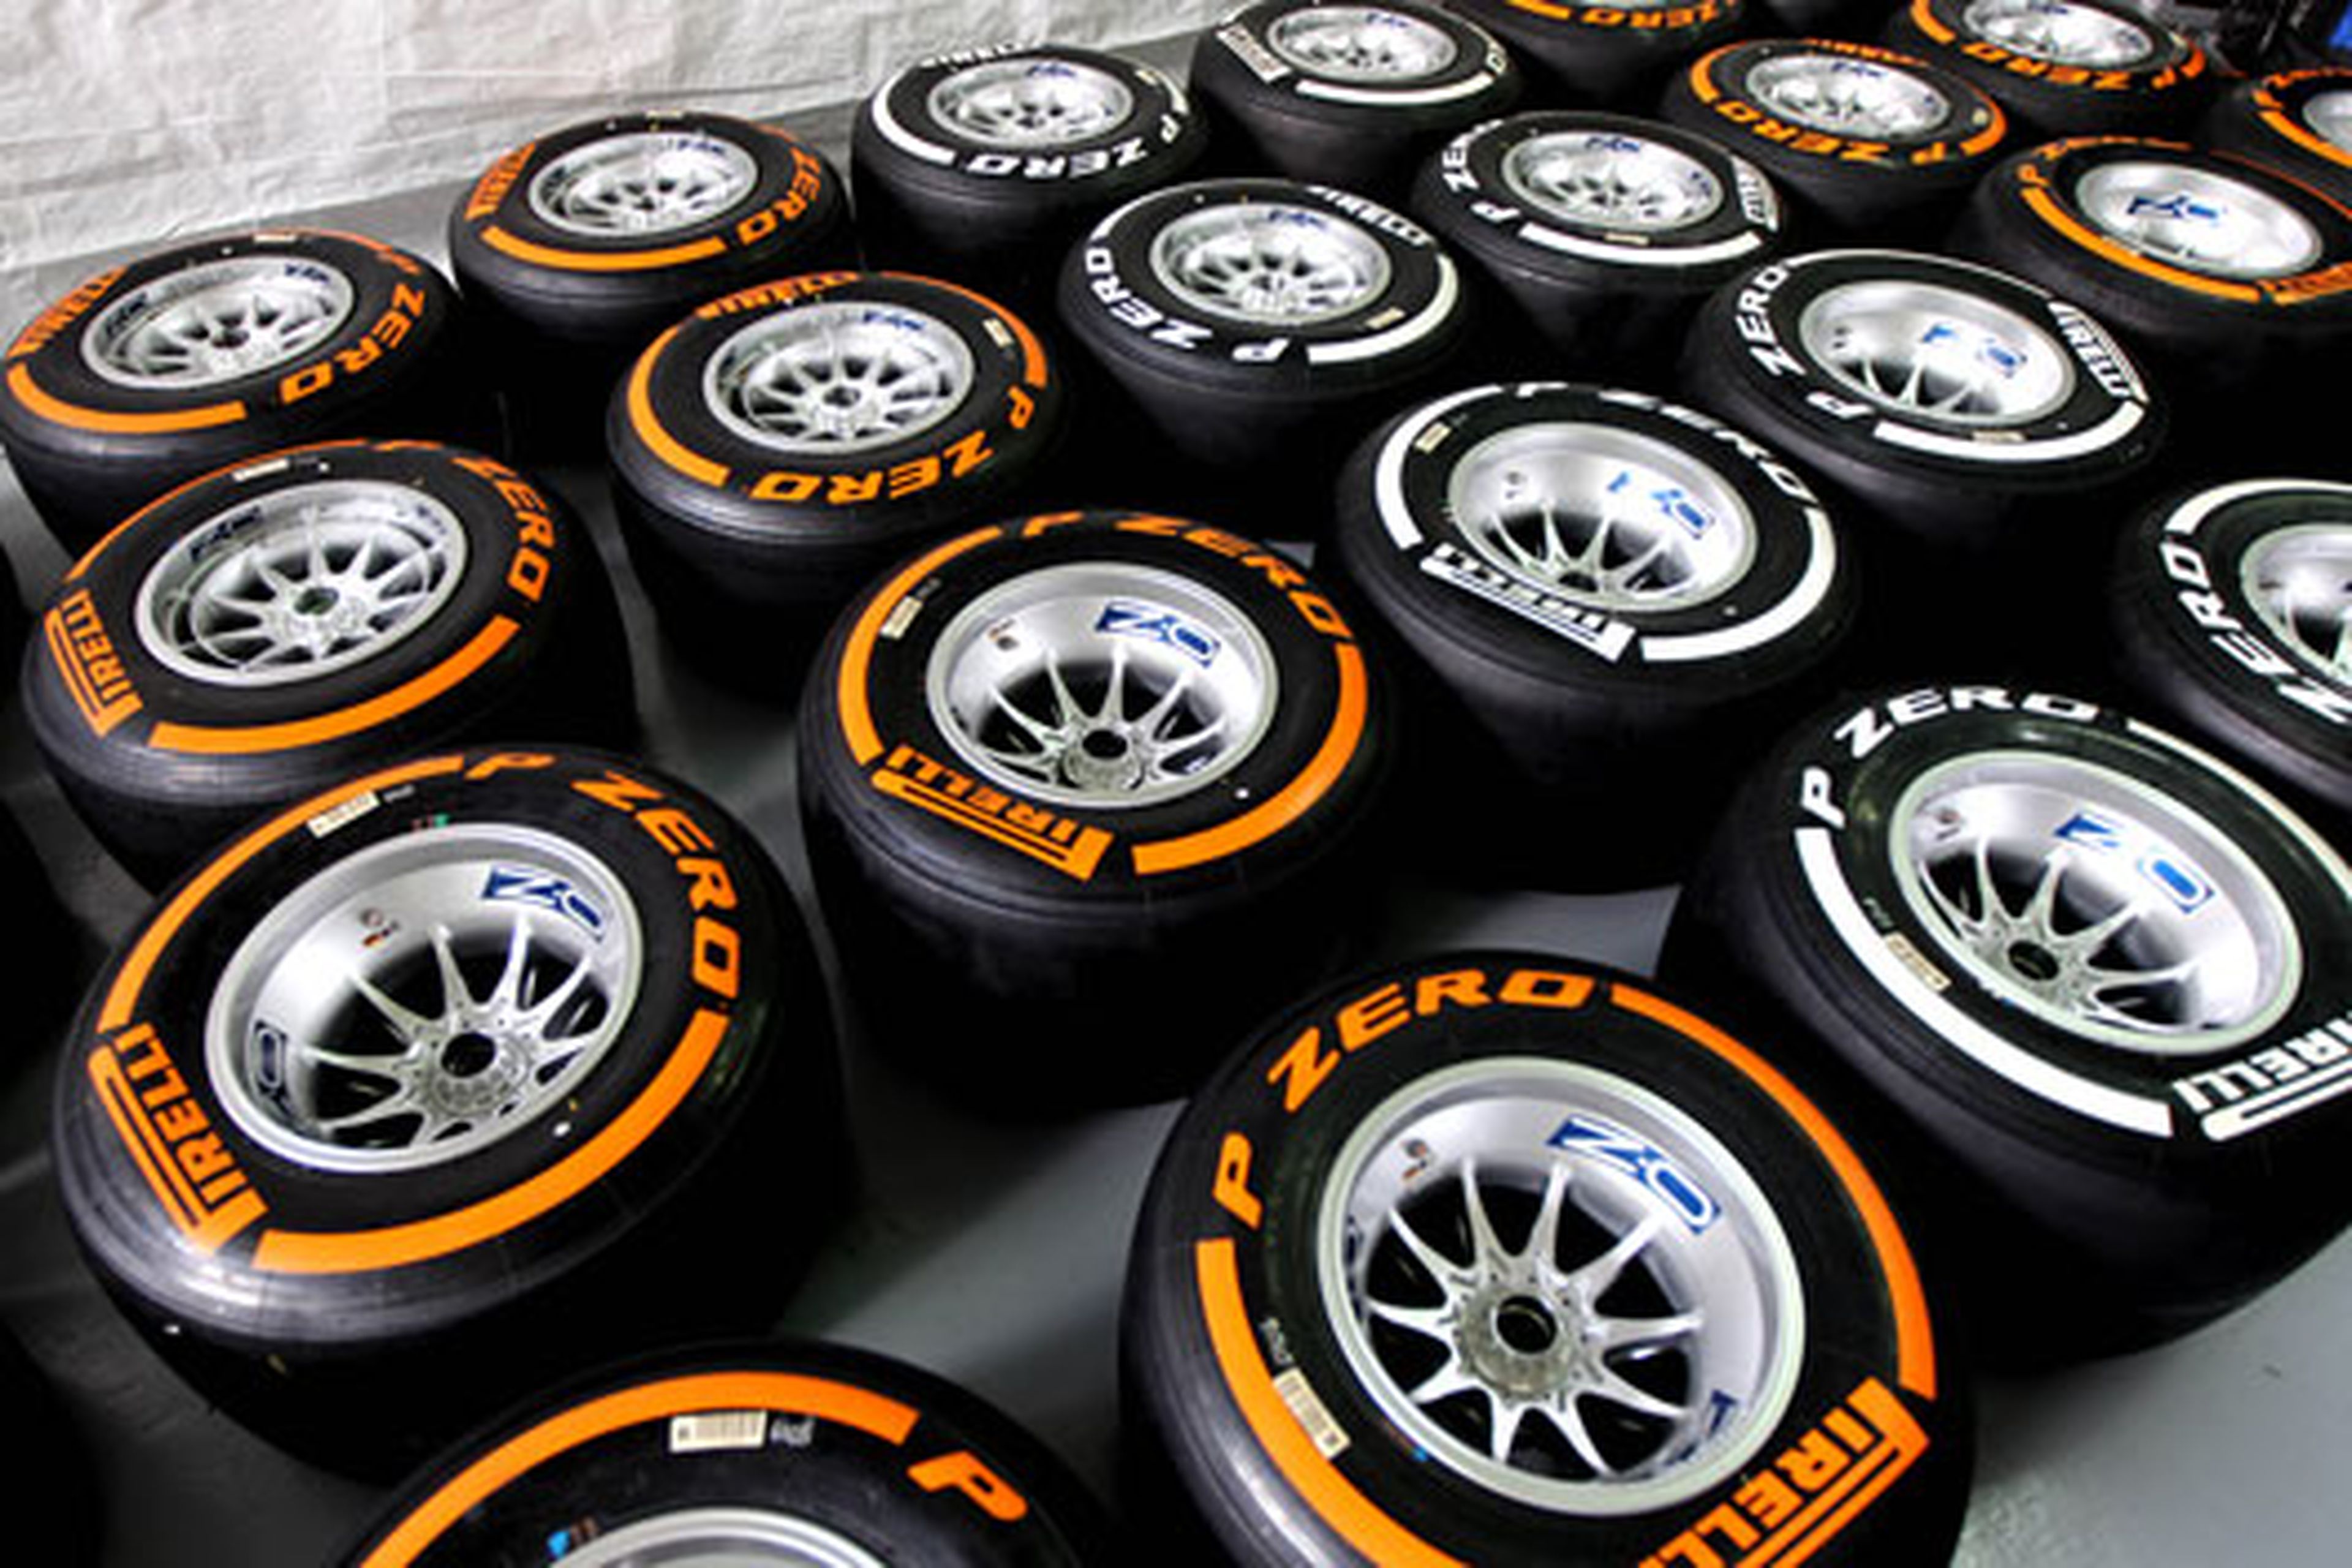 Los neumáticos duros y medios debutarán en el GP de Malasia